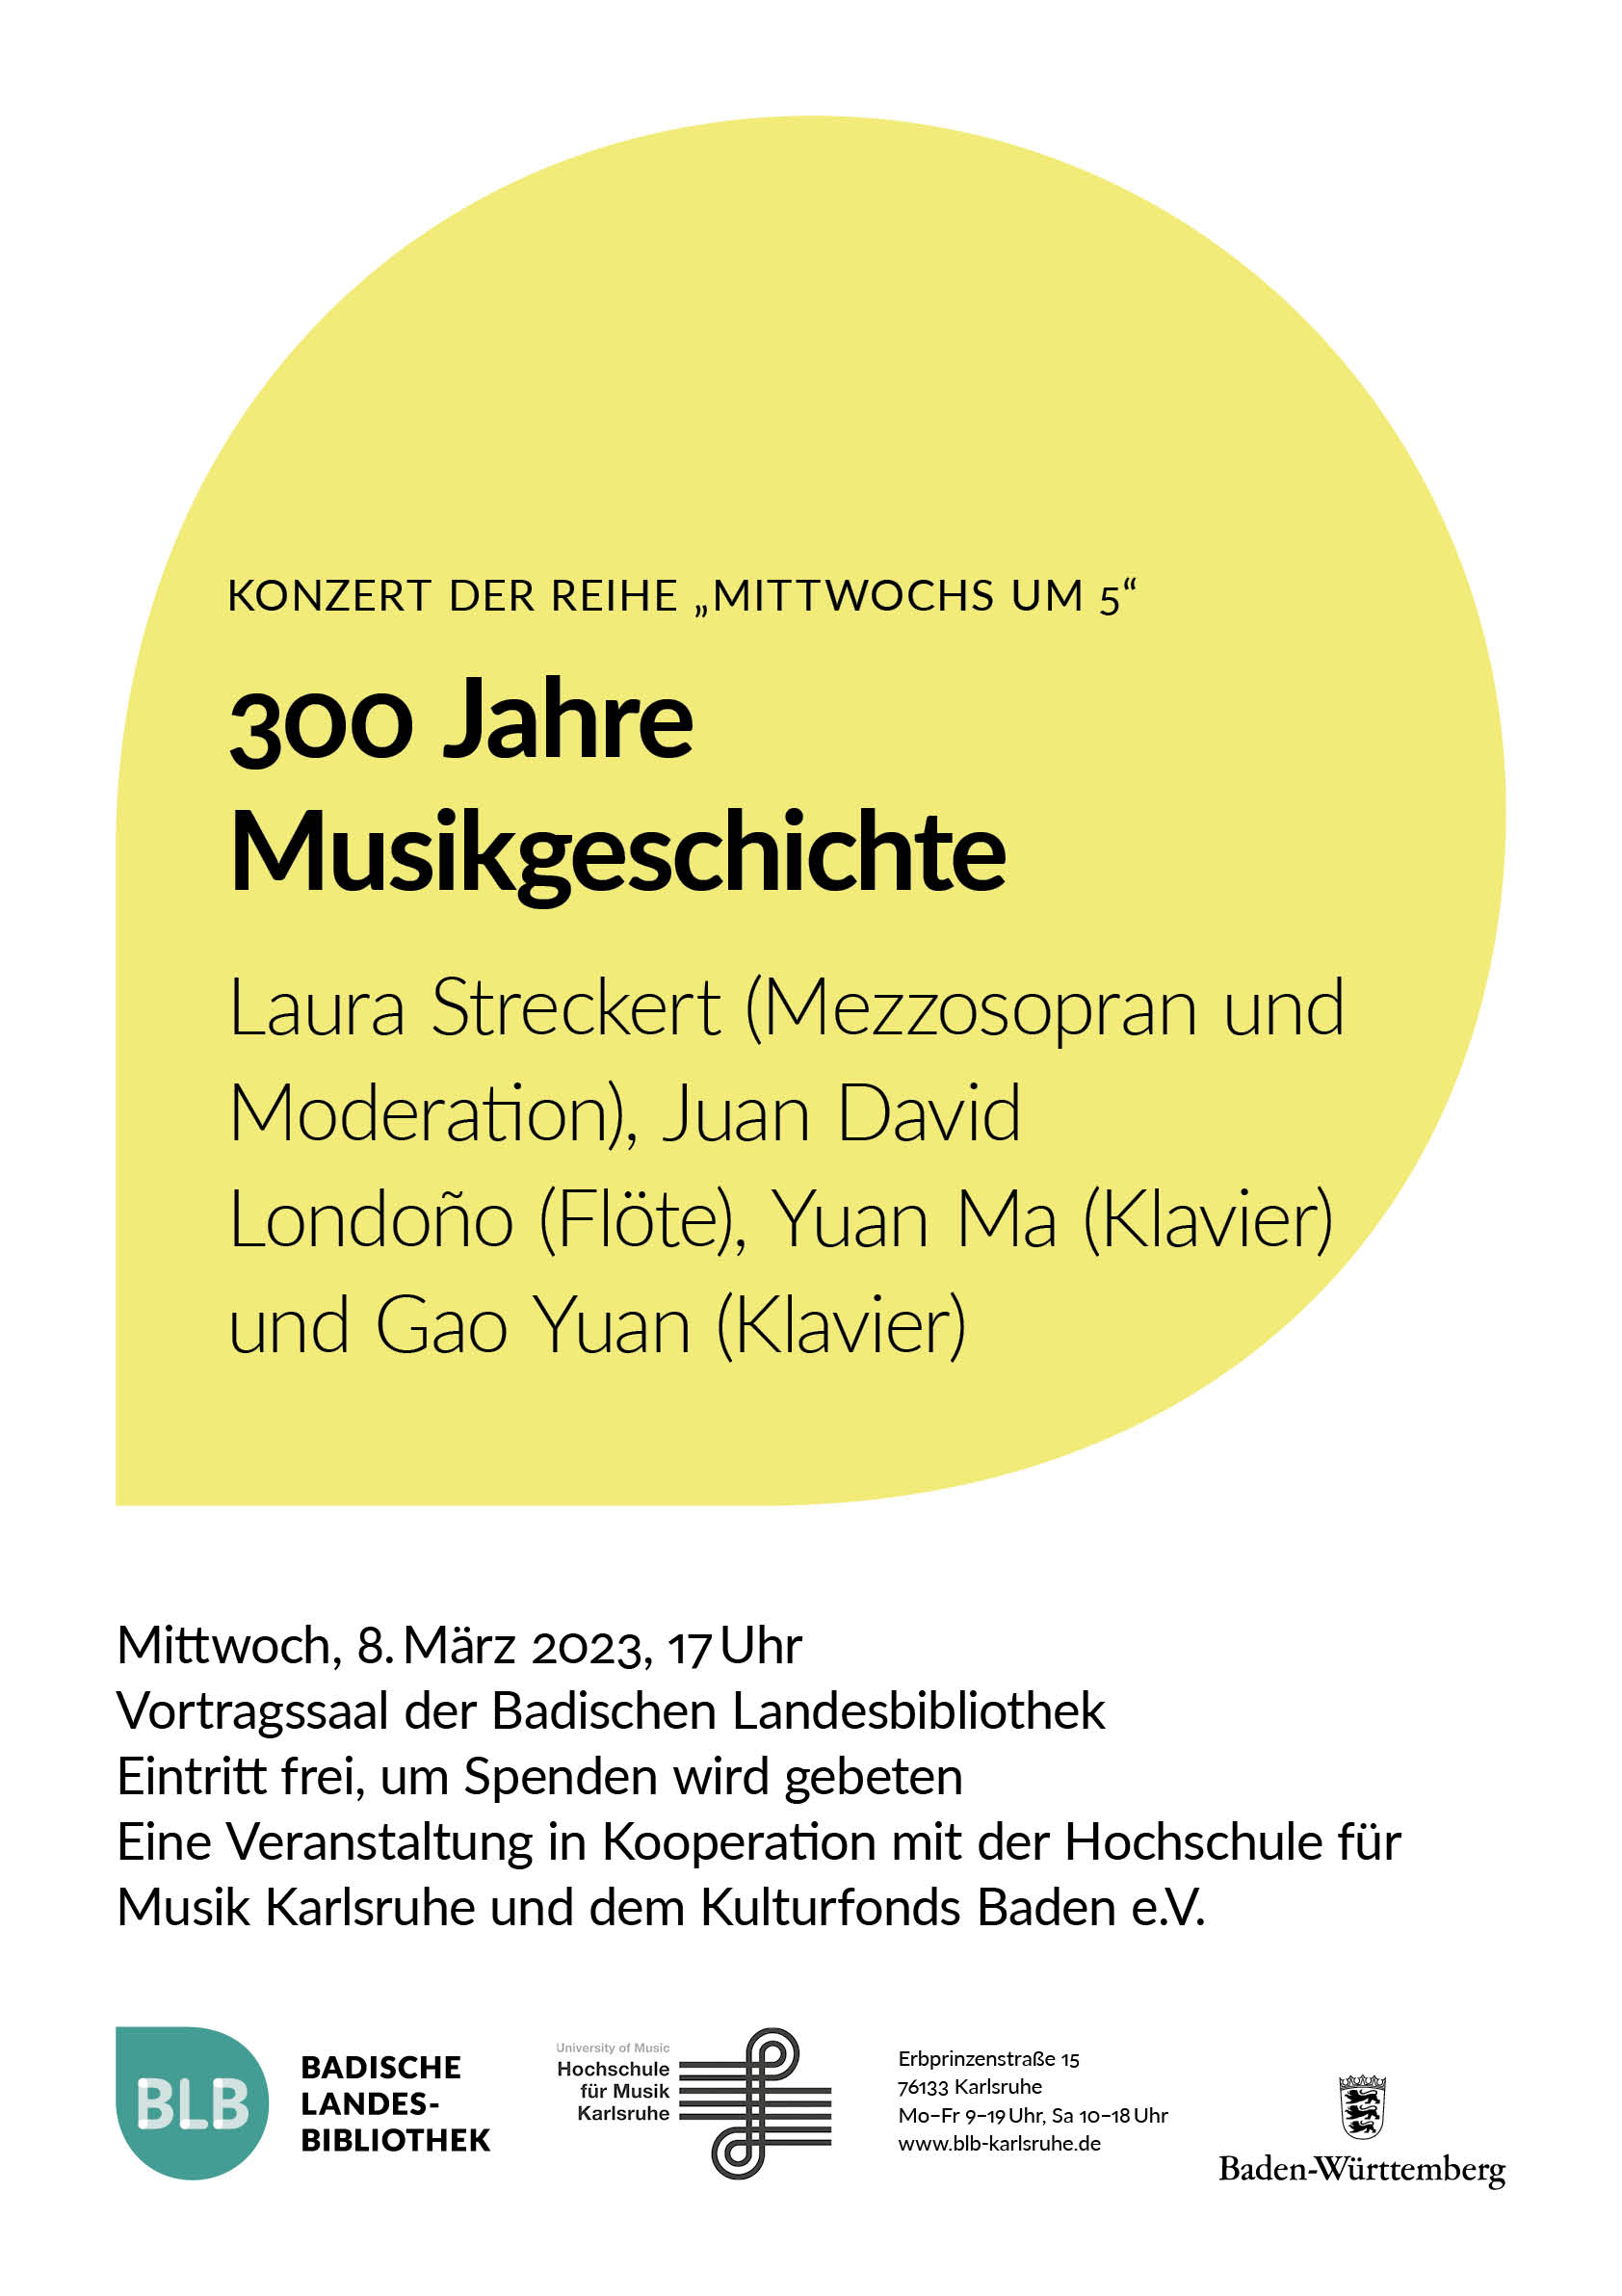 Zu sehen ist ein gelbes Monogon mit der Aufschrift "Konzert der Reihe Mittwochs um 5." Das Konzert findet am Mittwoch, den 8. März um 17 Uhr mit Laura Streckert, Preisträgerin des Kulturfonds Baden, im Vortragssaal der BLB statt. 